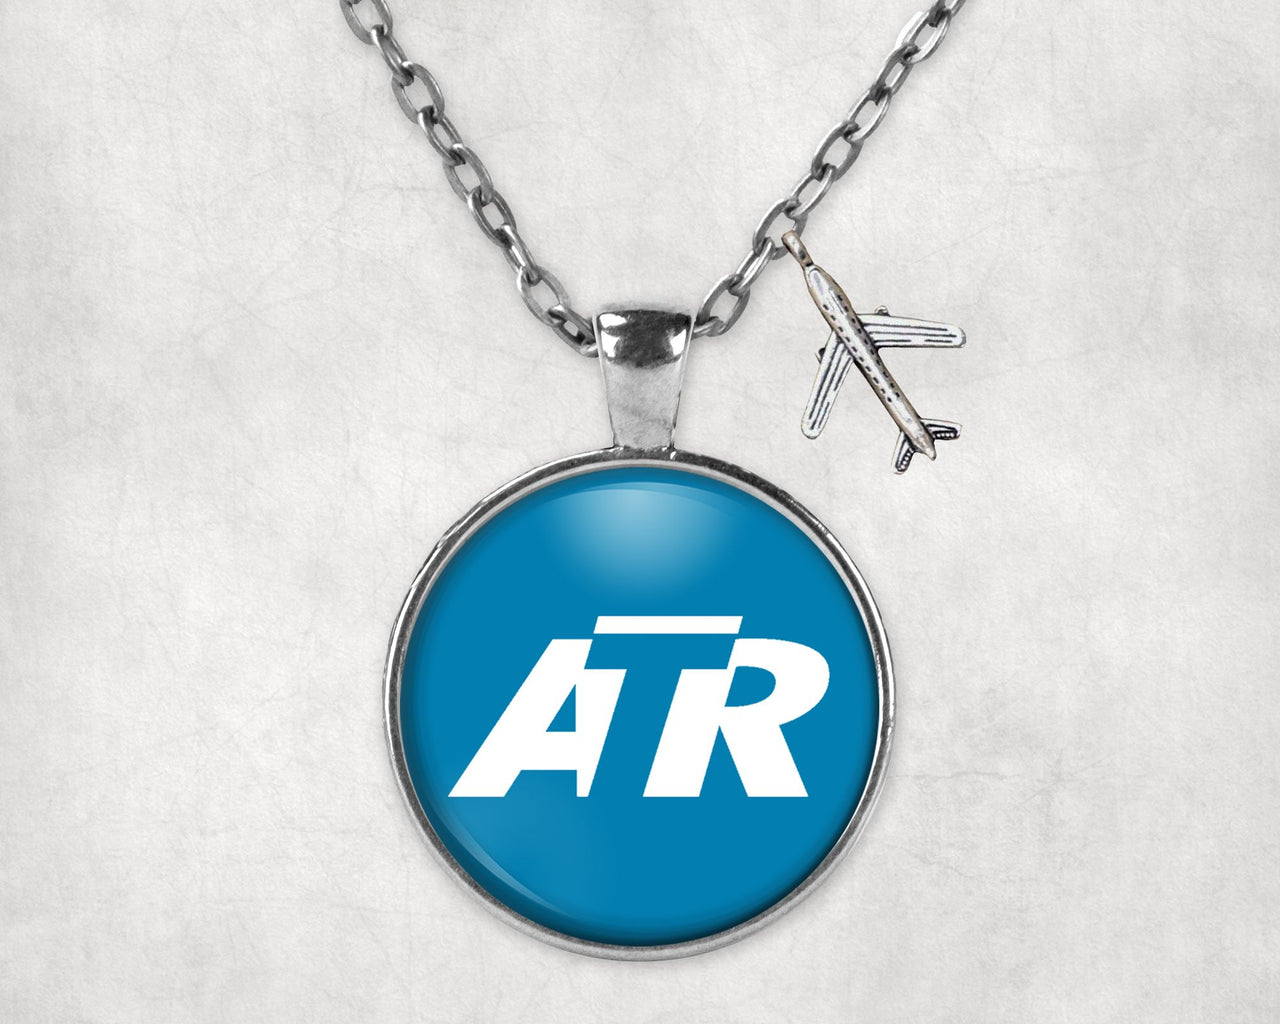 ATR & Text Designed Necklaces